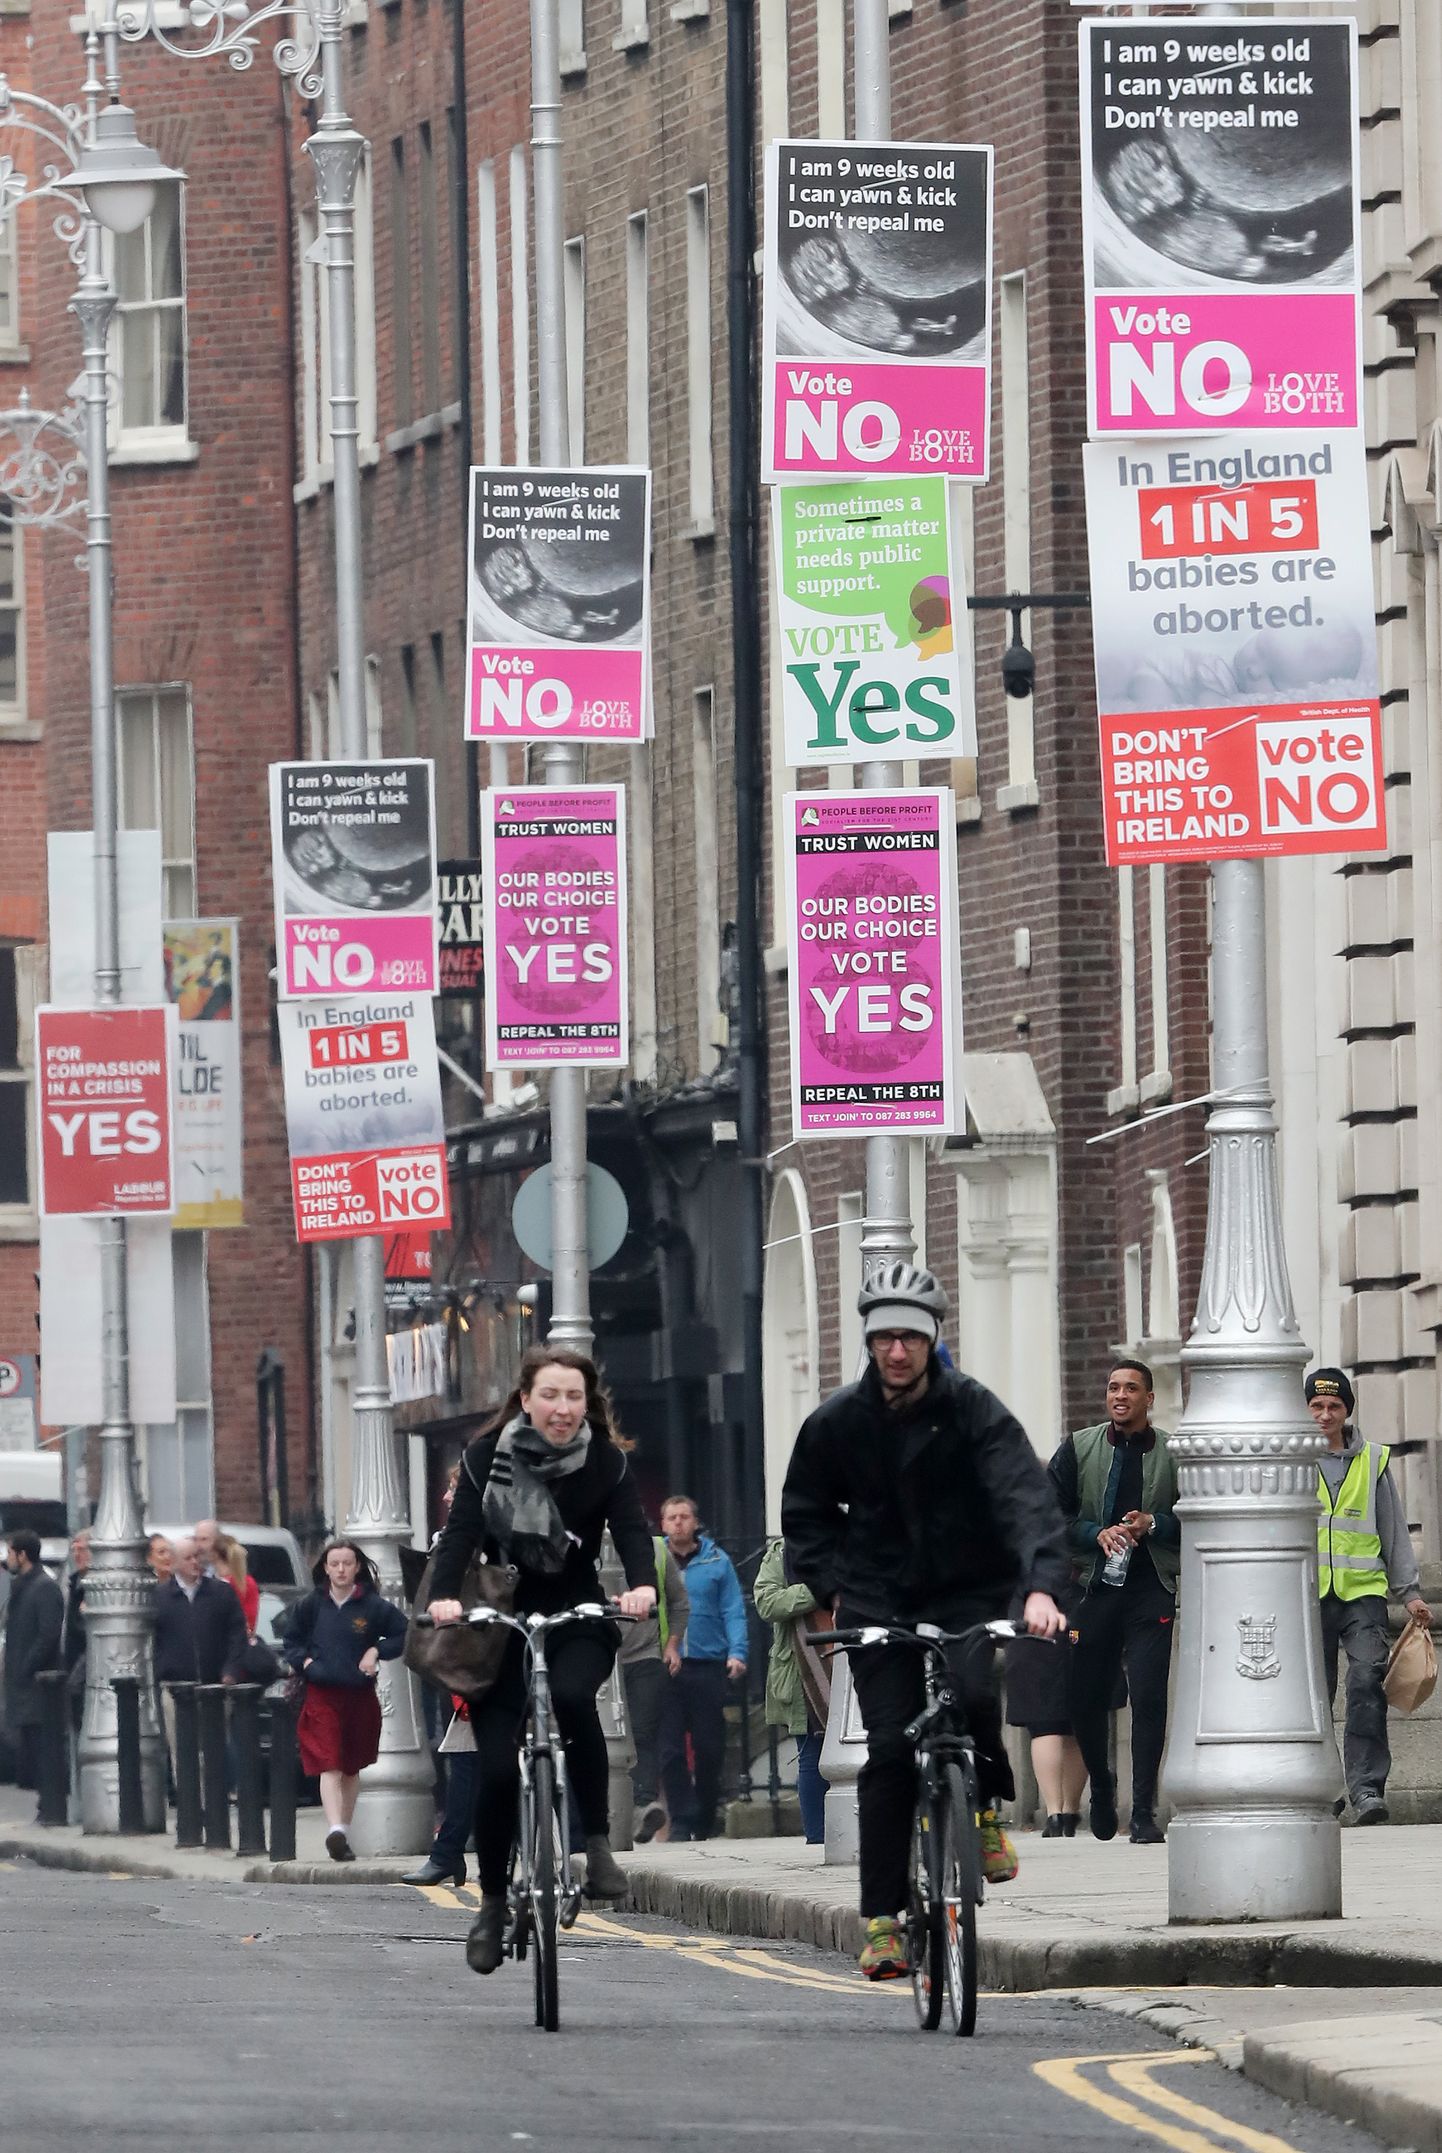 Dublini tänavad on ääristatud nii abordikeelu tühistamisele kui ka säilitamisele kutsuvate plakatitega. 25. mail peavad iirlased otsustama, kumb on nende valik.